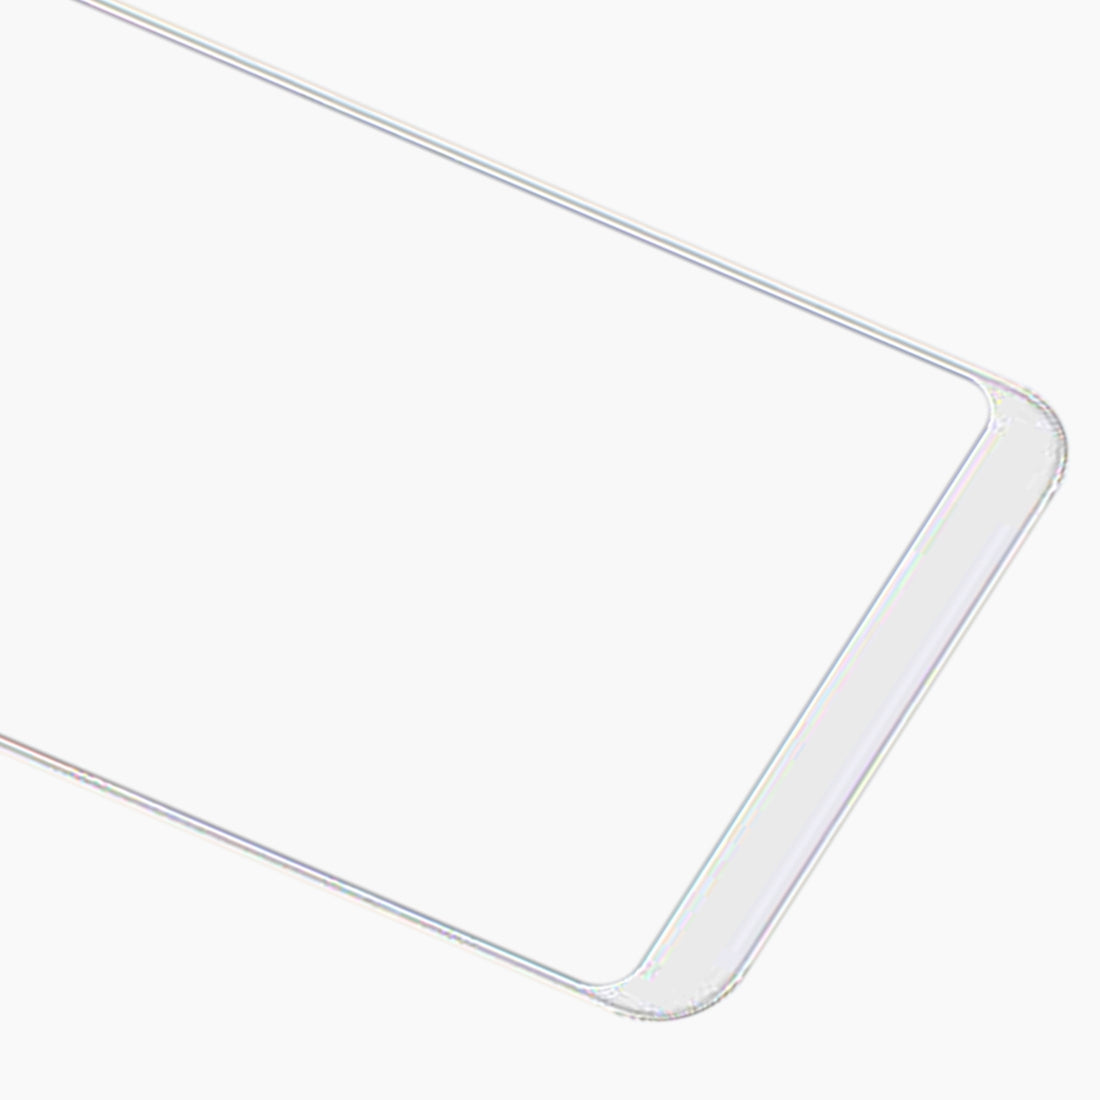 Vitre Ecran Avant + Adhésif OCA Xiaomi Redmi Note 5 Blanc